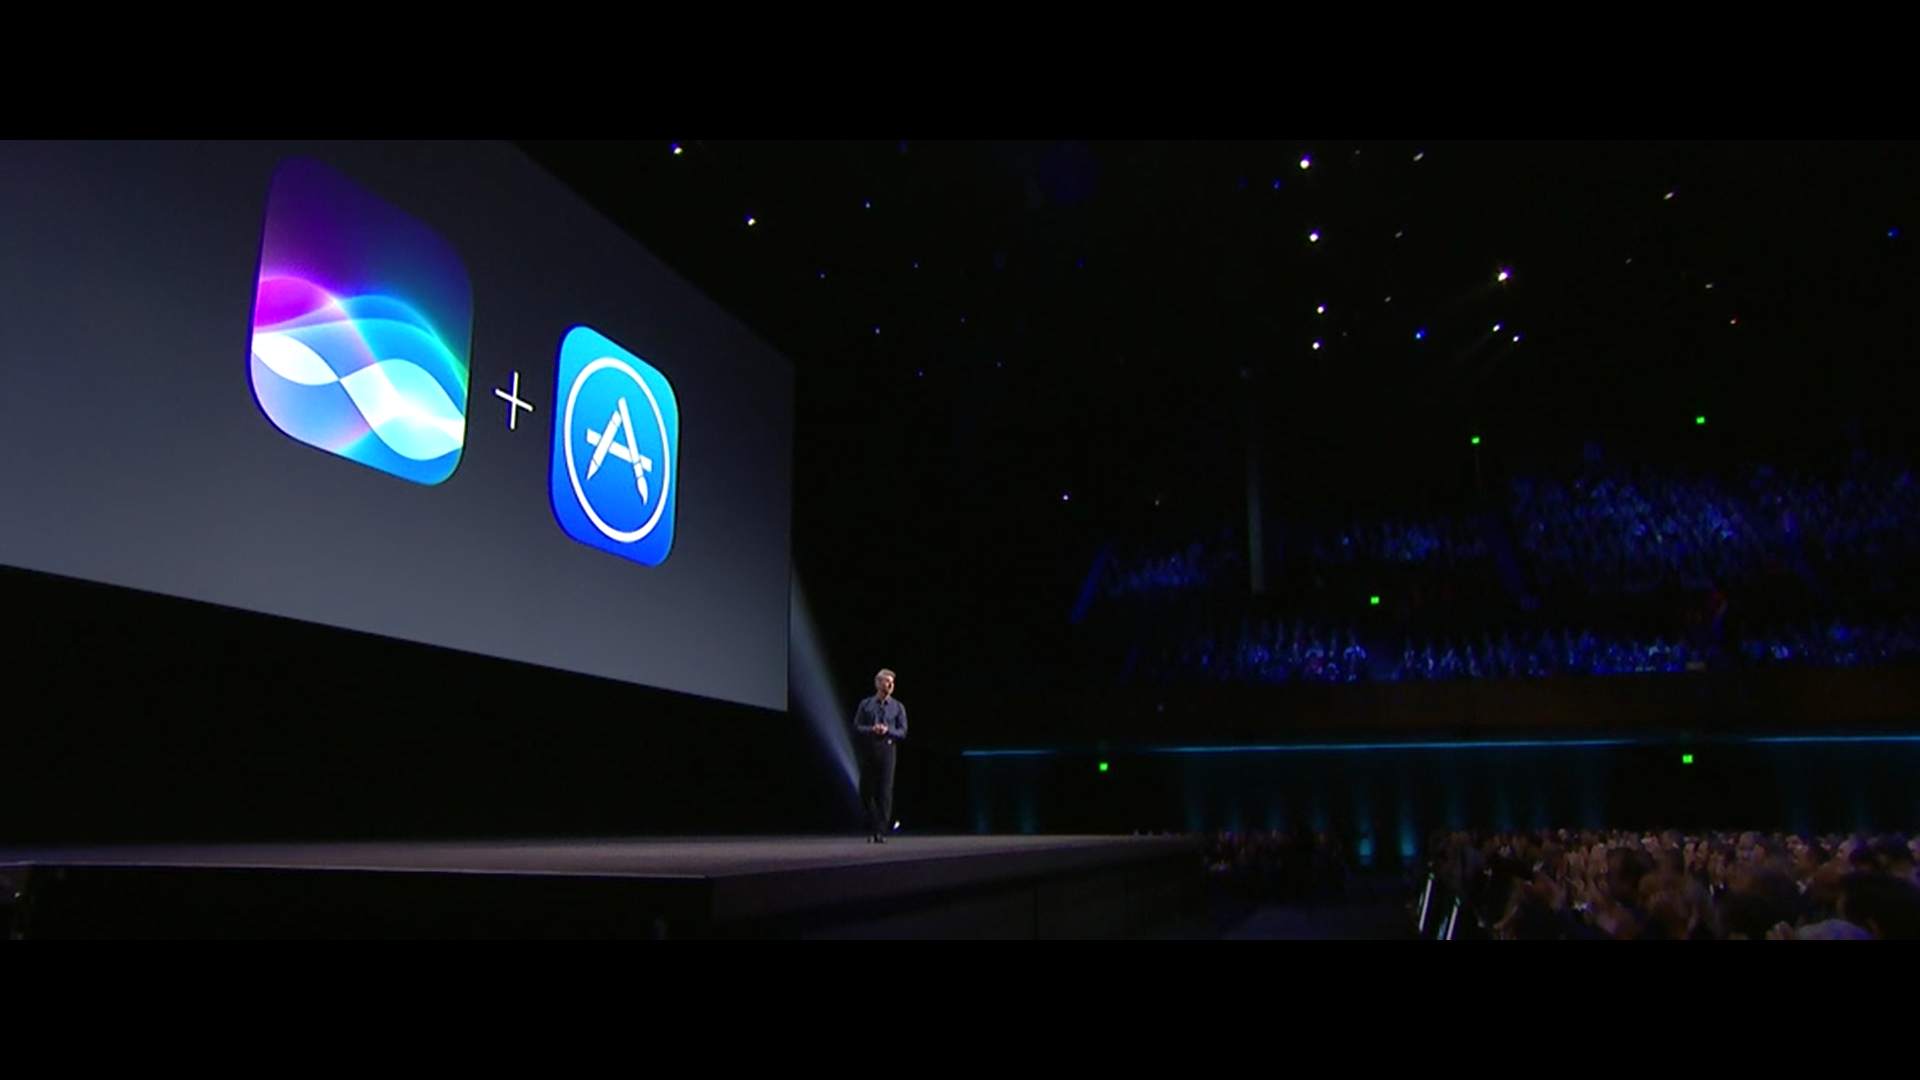 蘋果在 WWDC 2016 開發者大會上，發佈了新一代 Mac 作業系統，不再叫 OS X，改名為 macOS Sierra，加入了不少新功能。同時亦為 watchOS、tvOS 及 iOS 系統進行全面更新！